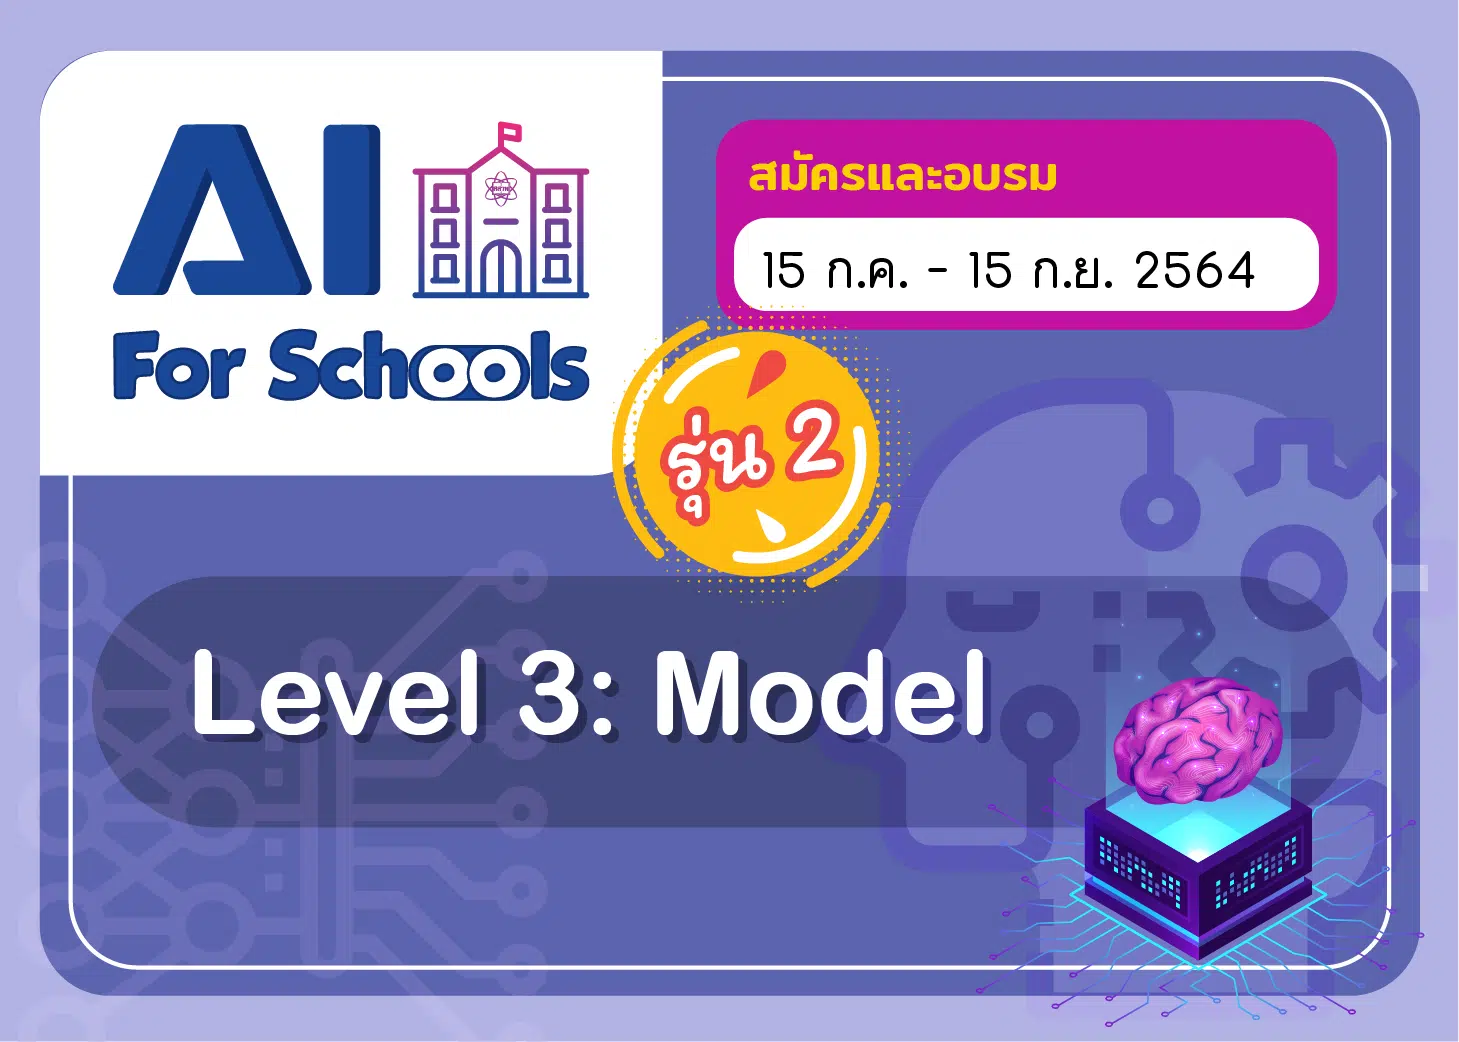 สสวท.เปิดอบรมออนไลน์ฟรี!!! หลักสูตร AI For Schools Level 3 รุ่น 2 สมัครวันนี้ - 15 กันยายน 2564